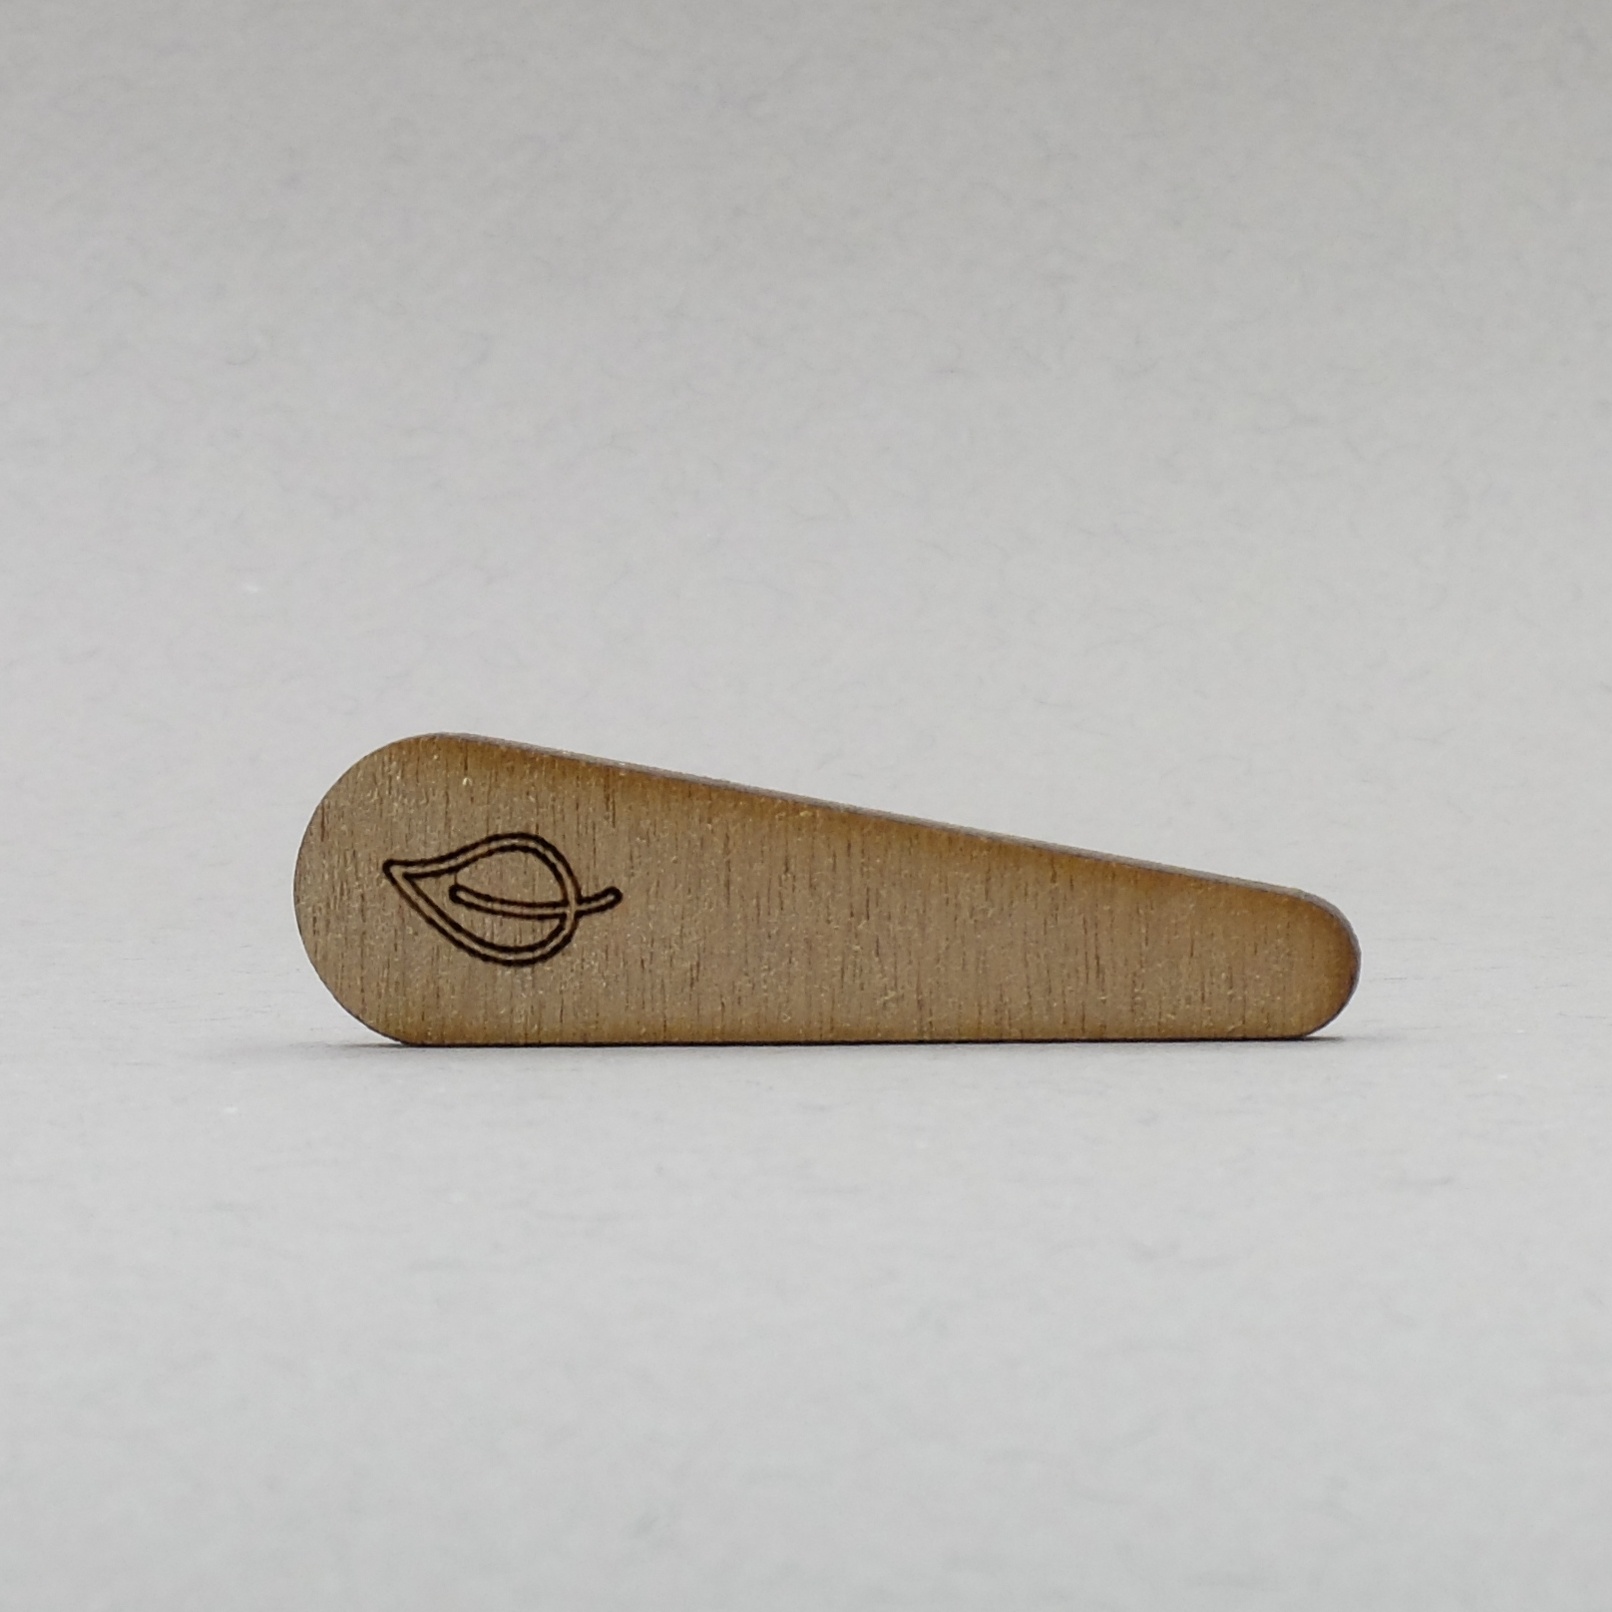 Petite spatule en bois cosmétique